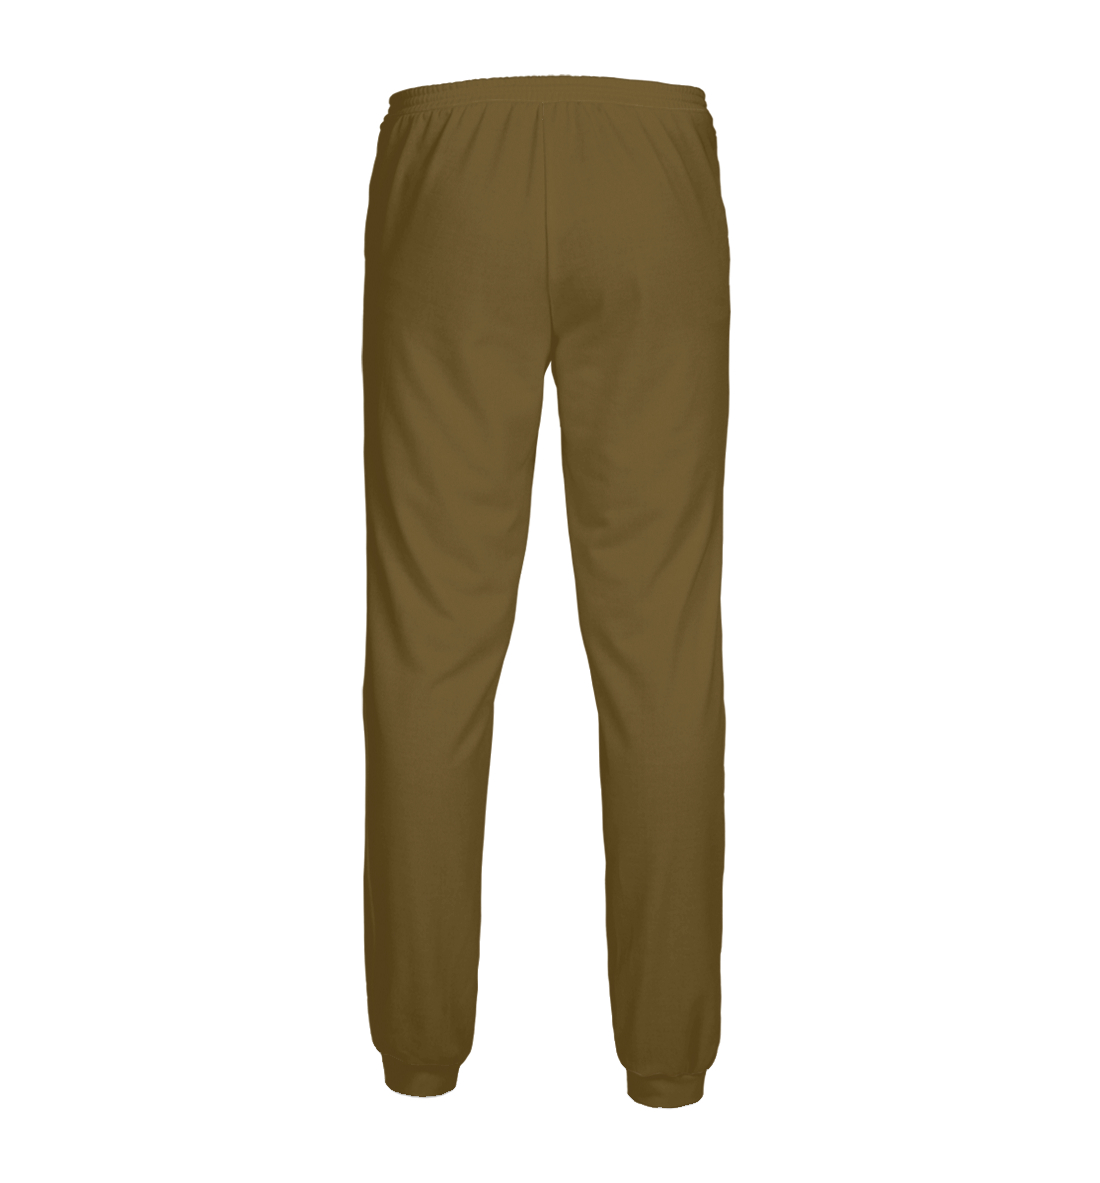 Мужские спортивные штаны с принтом Цвет Умбра  - фото 2-спина